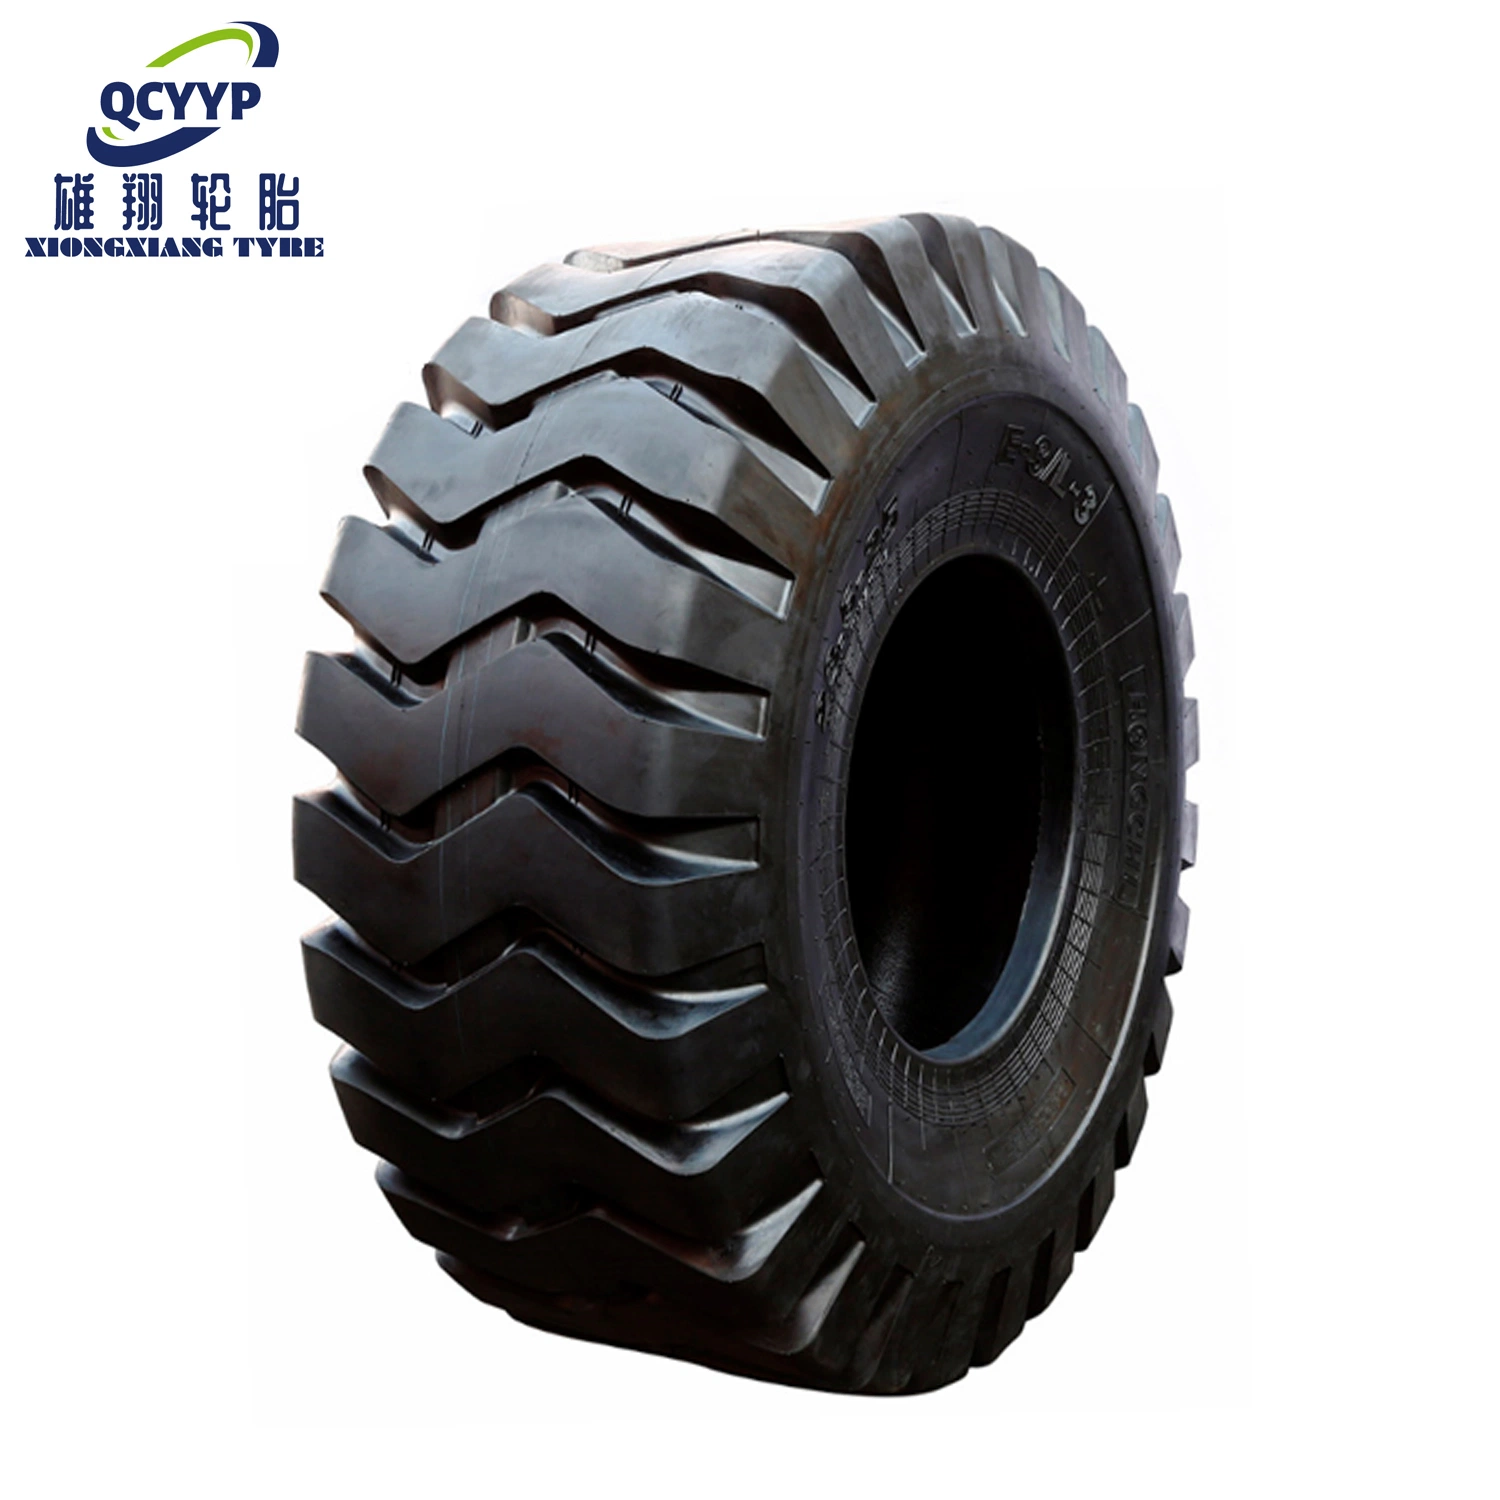 Neumático para uso en carretera E3/L3/L5 (17,5-25, 20,5-25, 23,5-25, 26,5-25, 29,5-25) para neumático de motoniveladora de neumático industrial de neumático OTR neumático sólido de neumático OTR